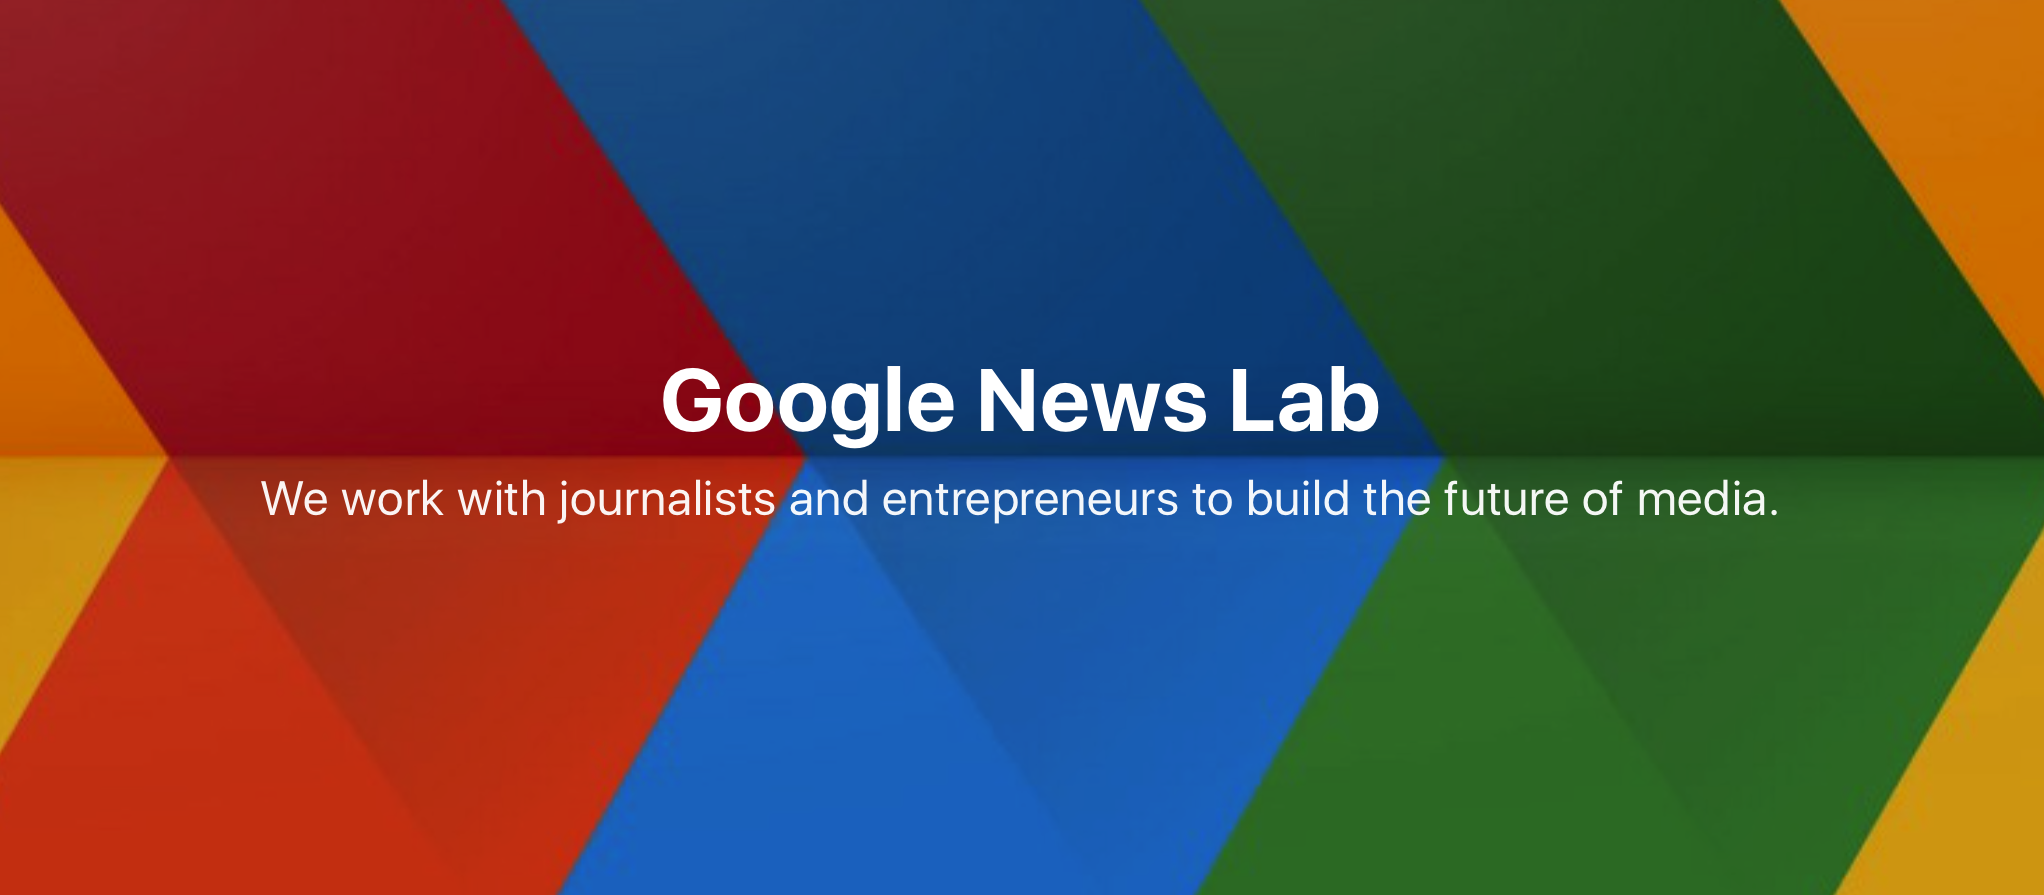 Google News Lab is on Medium